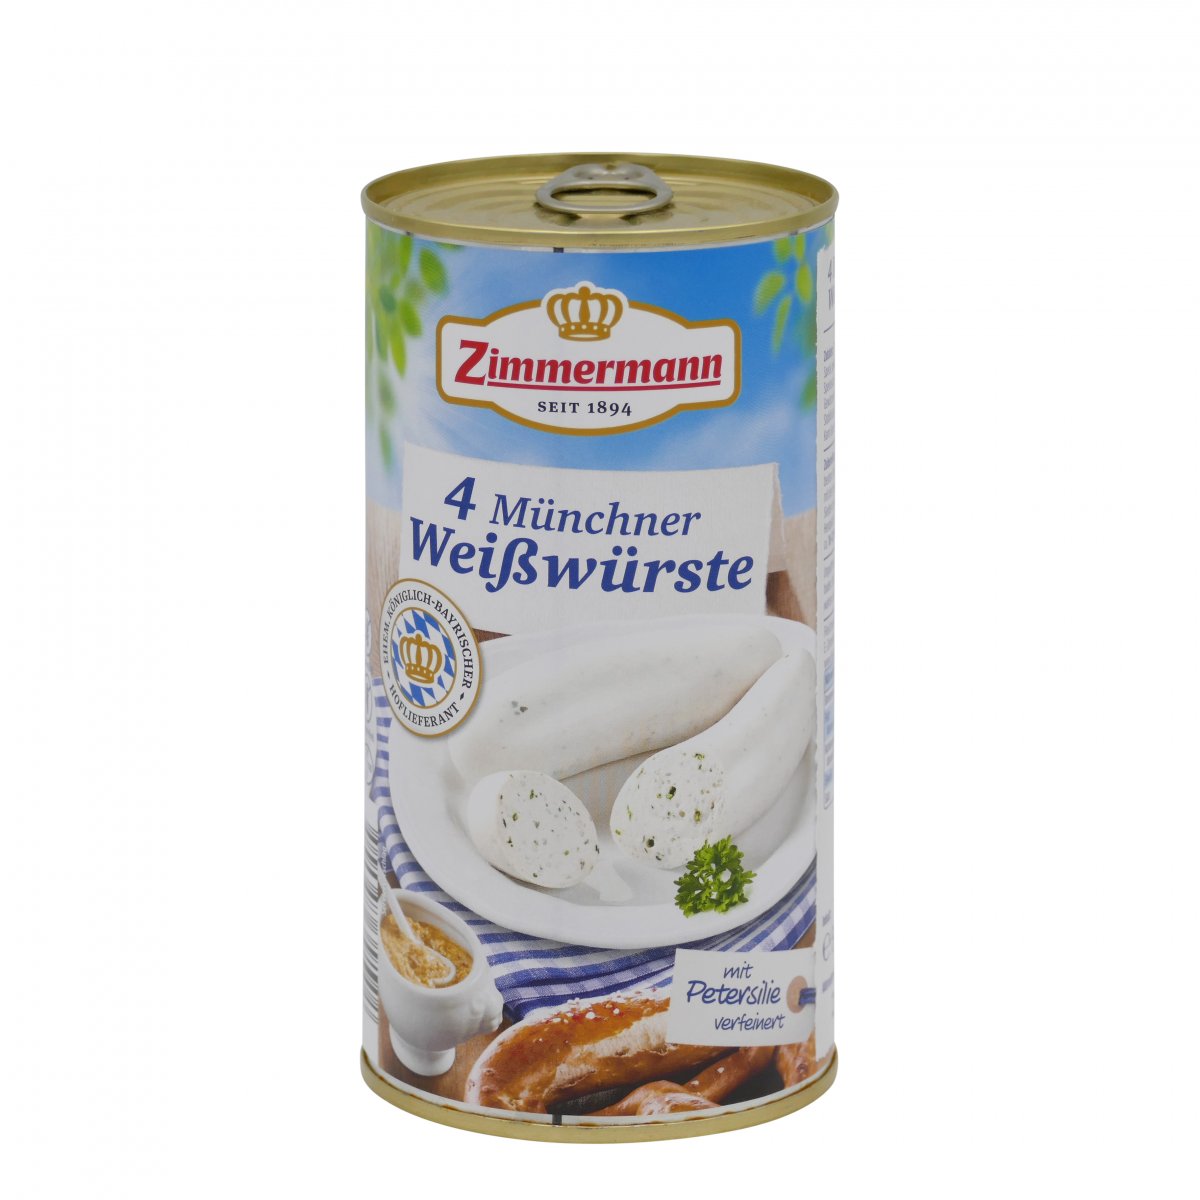 Zimmermann 4 Münchner Weißwürste Salsiccia Bianca di Monaco di Baviera gluten-free